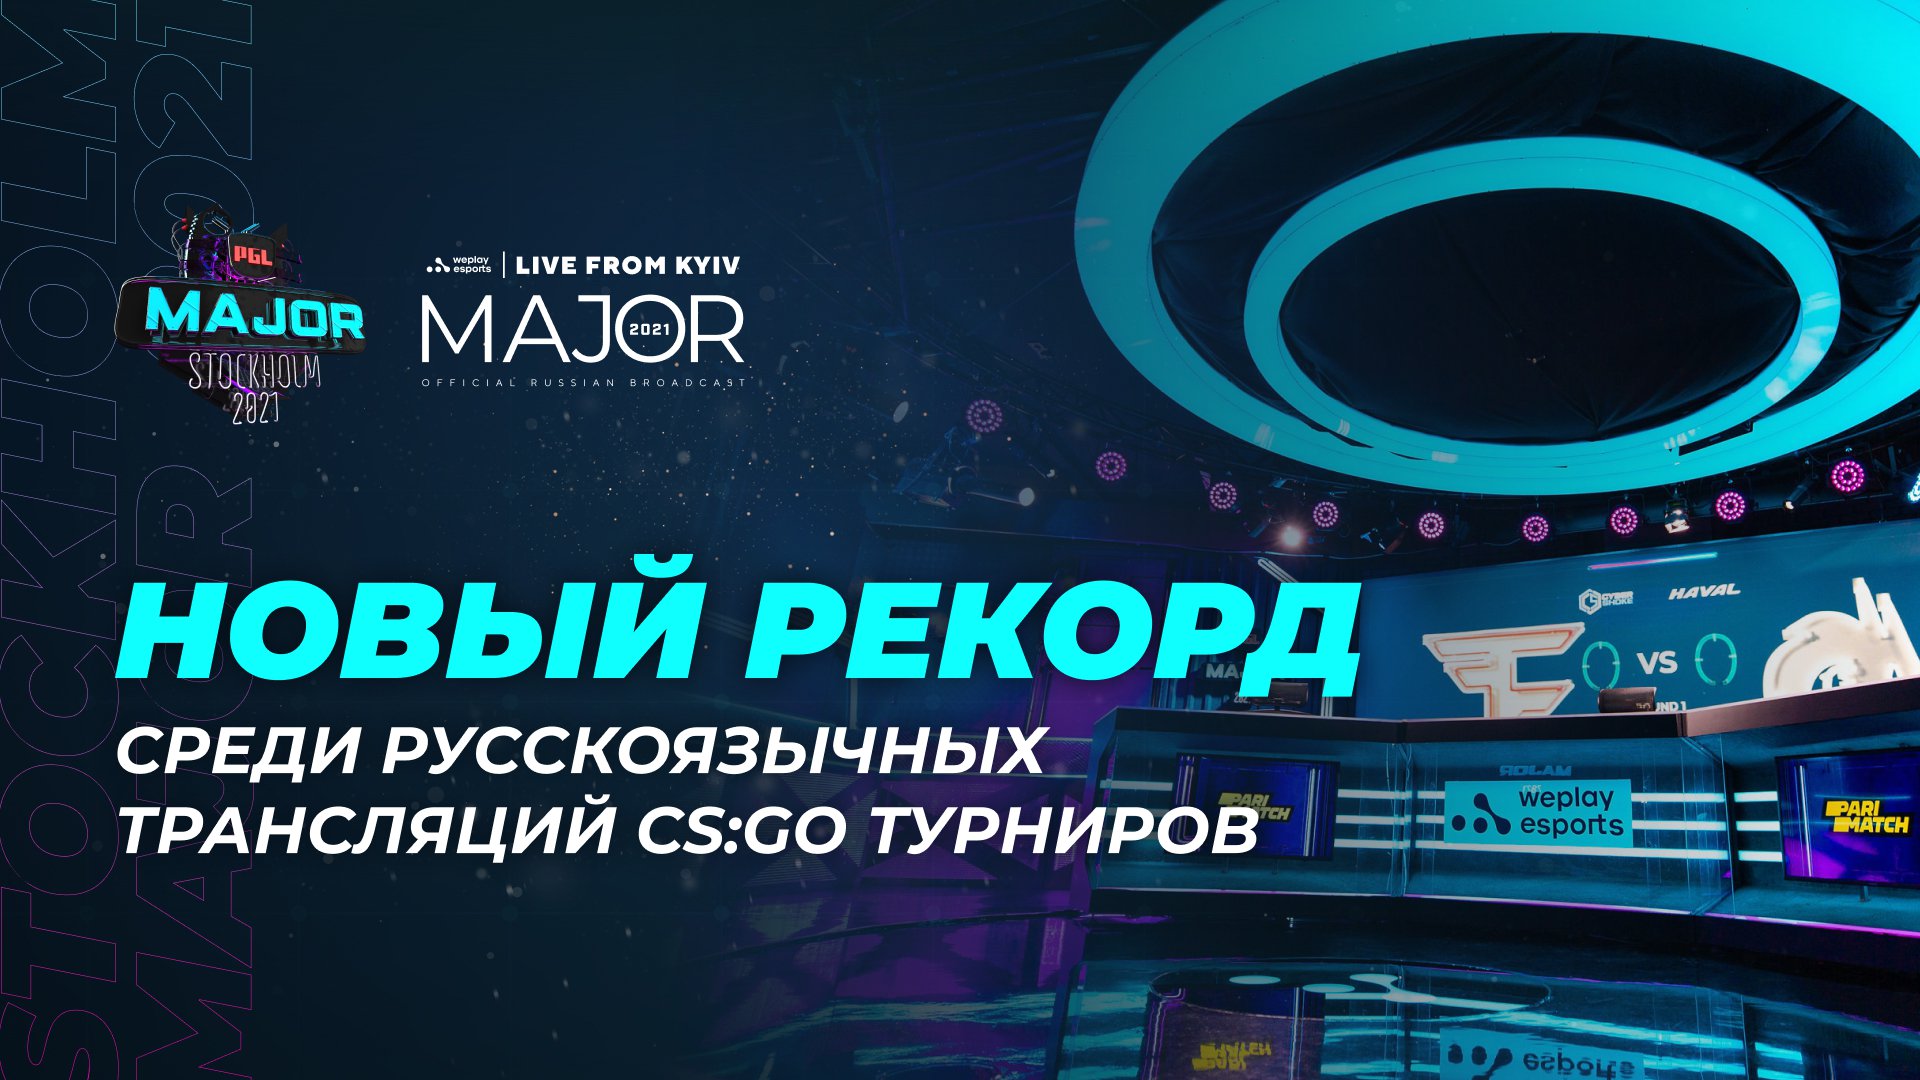 Русскоязычная трансляция PGL Major Stockholm 2021 установила рекорд по количеству зрителей среди трансляций CS:GO турниров на русском языке. Изображение: WePlay Holding.